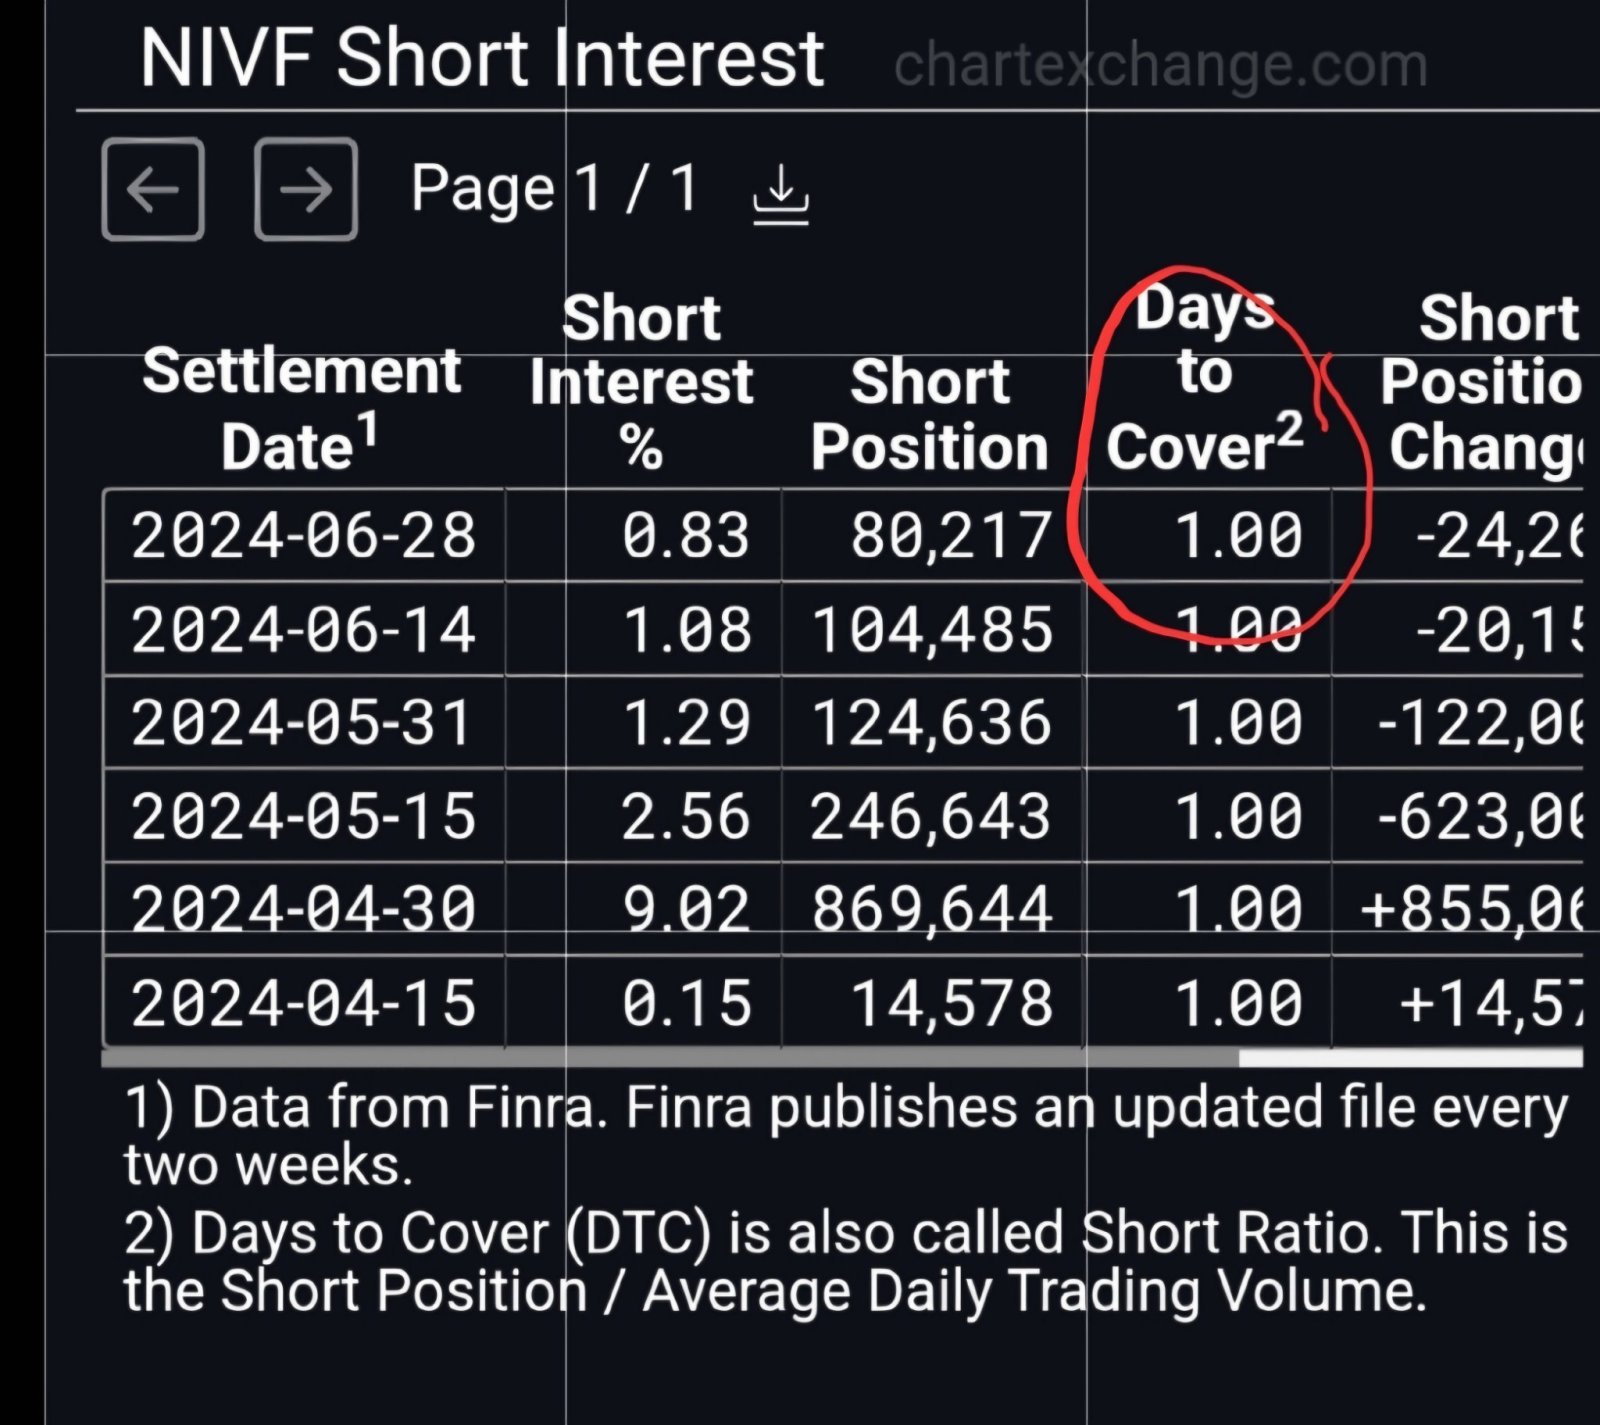 Short Update on NIVF